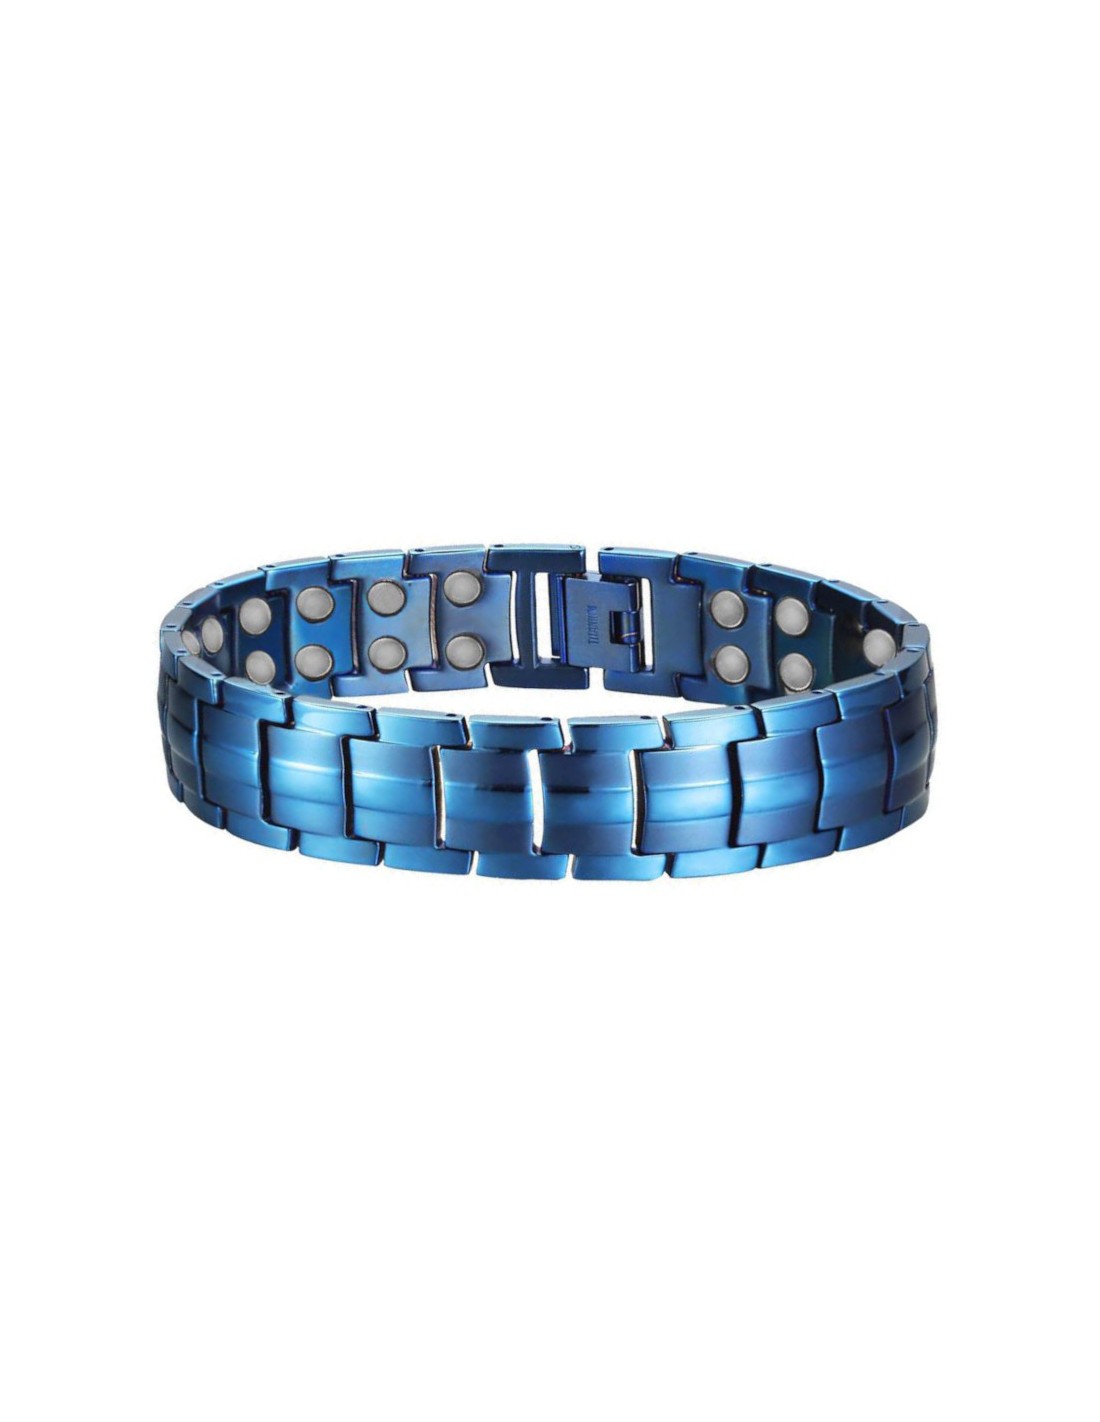 Bracelet Magnétique Réglable avec 15 Aimants Trépans de Forage pour Les Vis De Maintien noir Clous Bricolage Bracelet Magnetique Cadeau Homme 2020 Calendrier De Lavent Cadeaux Noel Homme 